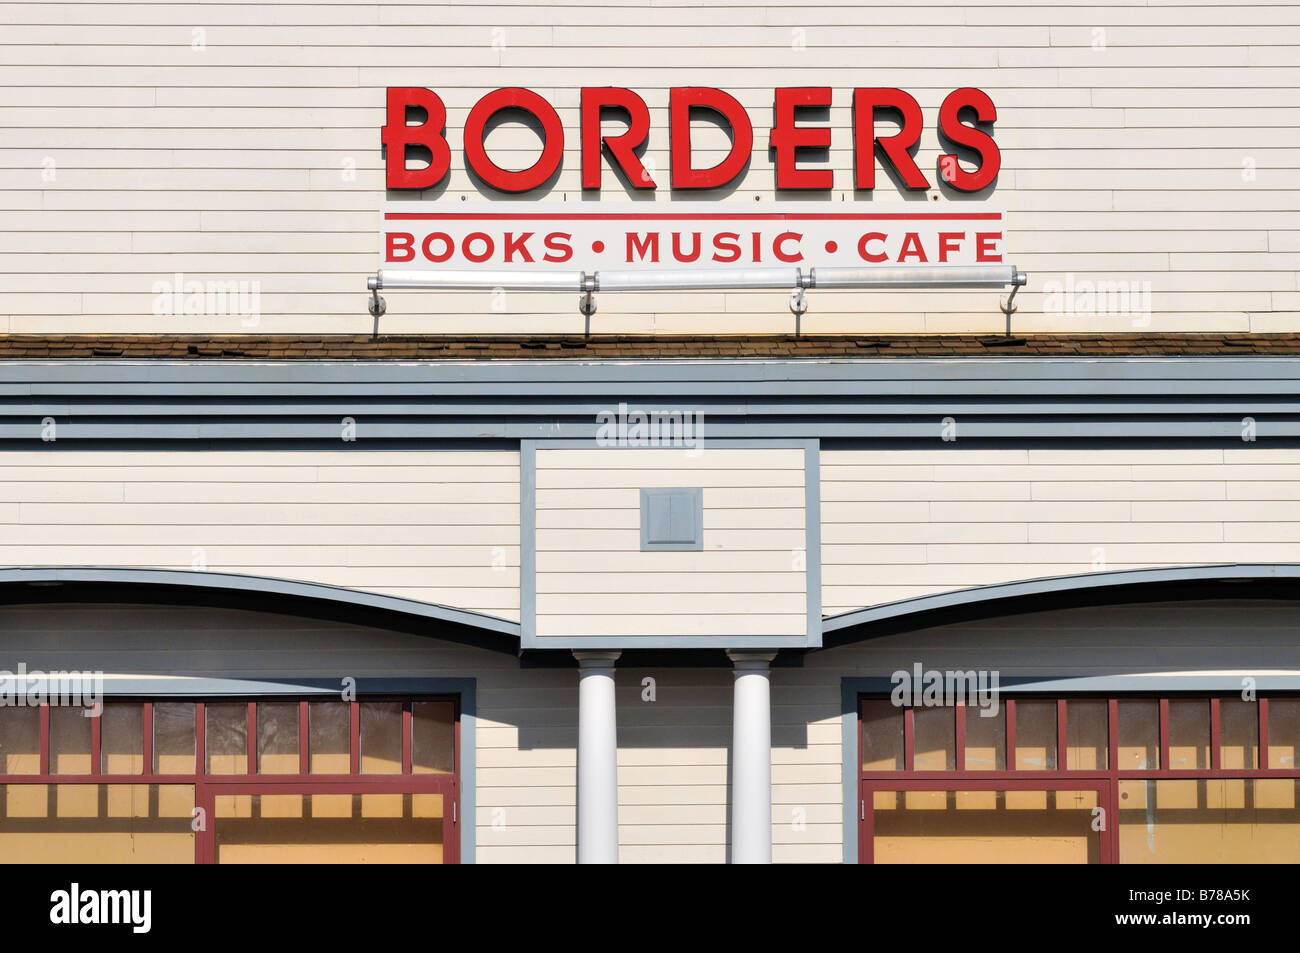 Librairie frontières panneau extérieur pour livres musique cafe Banque D'Images